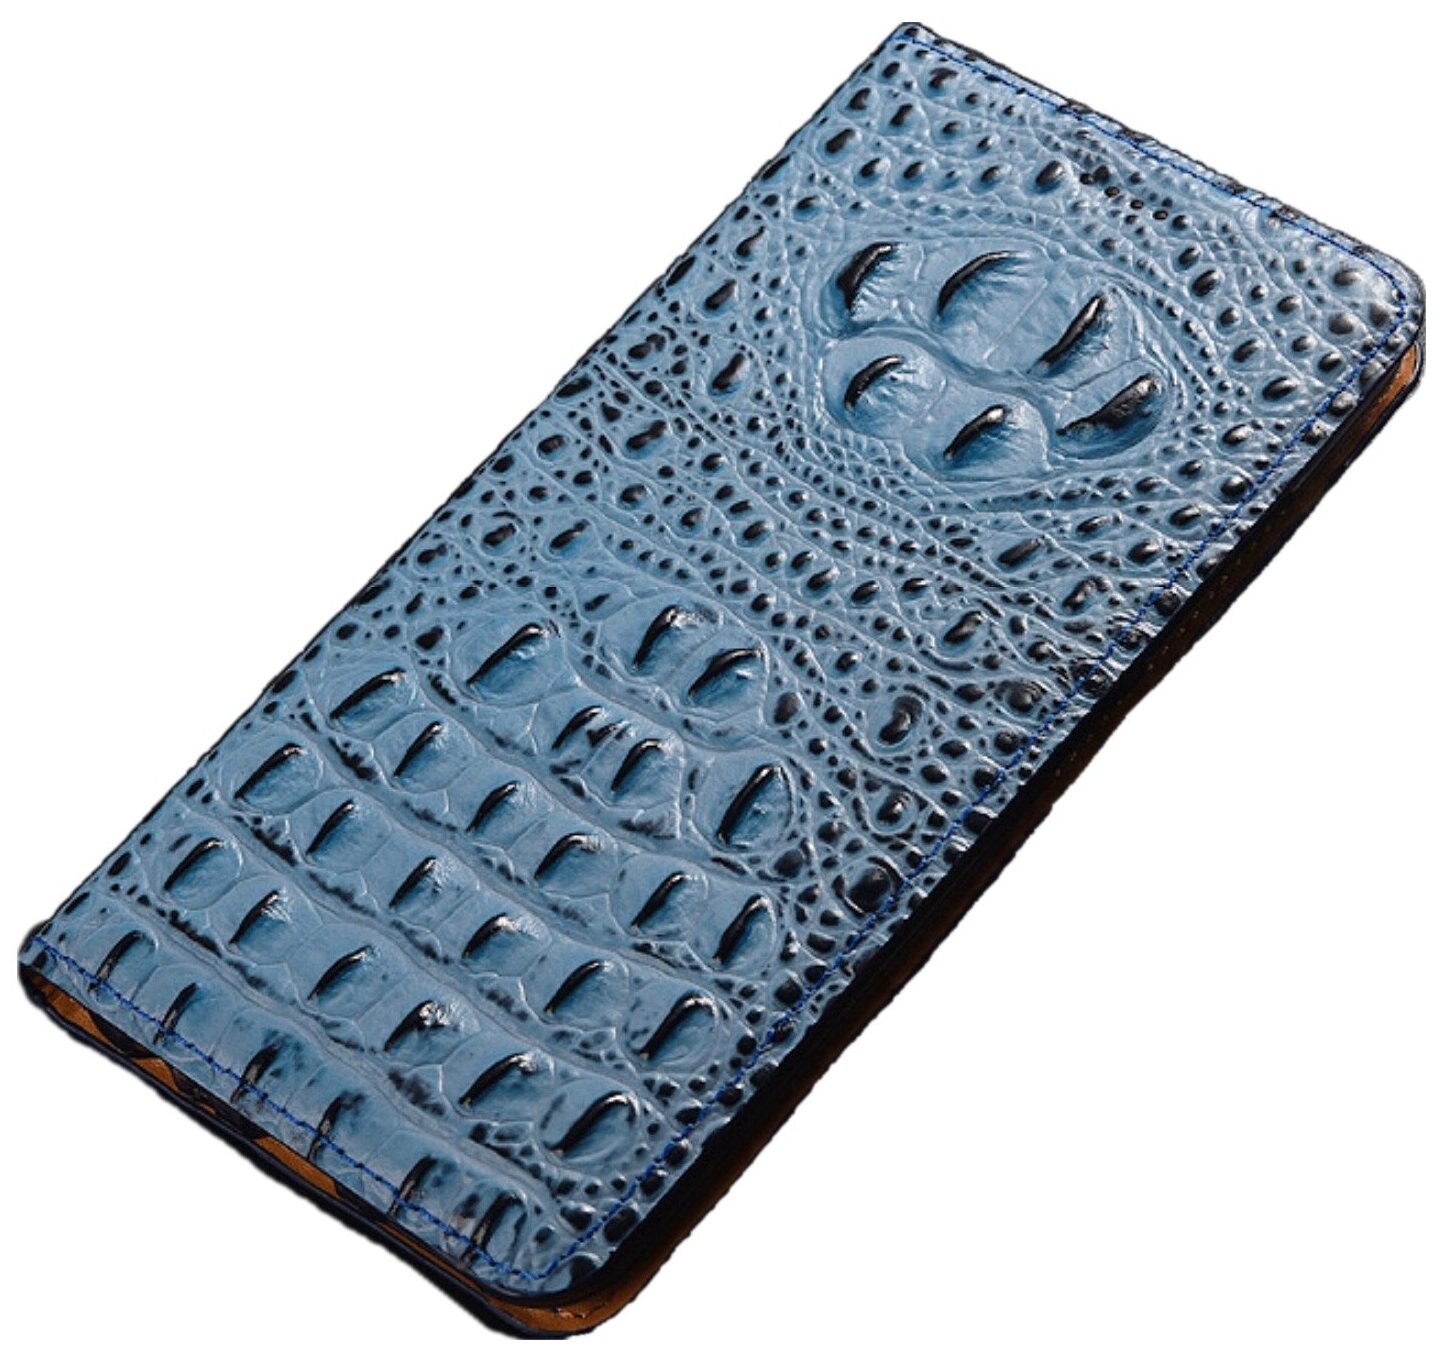 Чехол-книжка Чехол. ру Premium для Huawei P40 Pro из натуральной кожи с объёмным 3D рельефом спинки кожи крокодила роскошный эксклюзивный синий